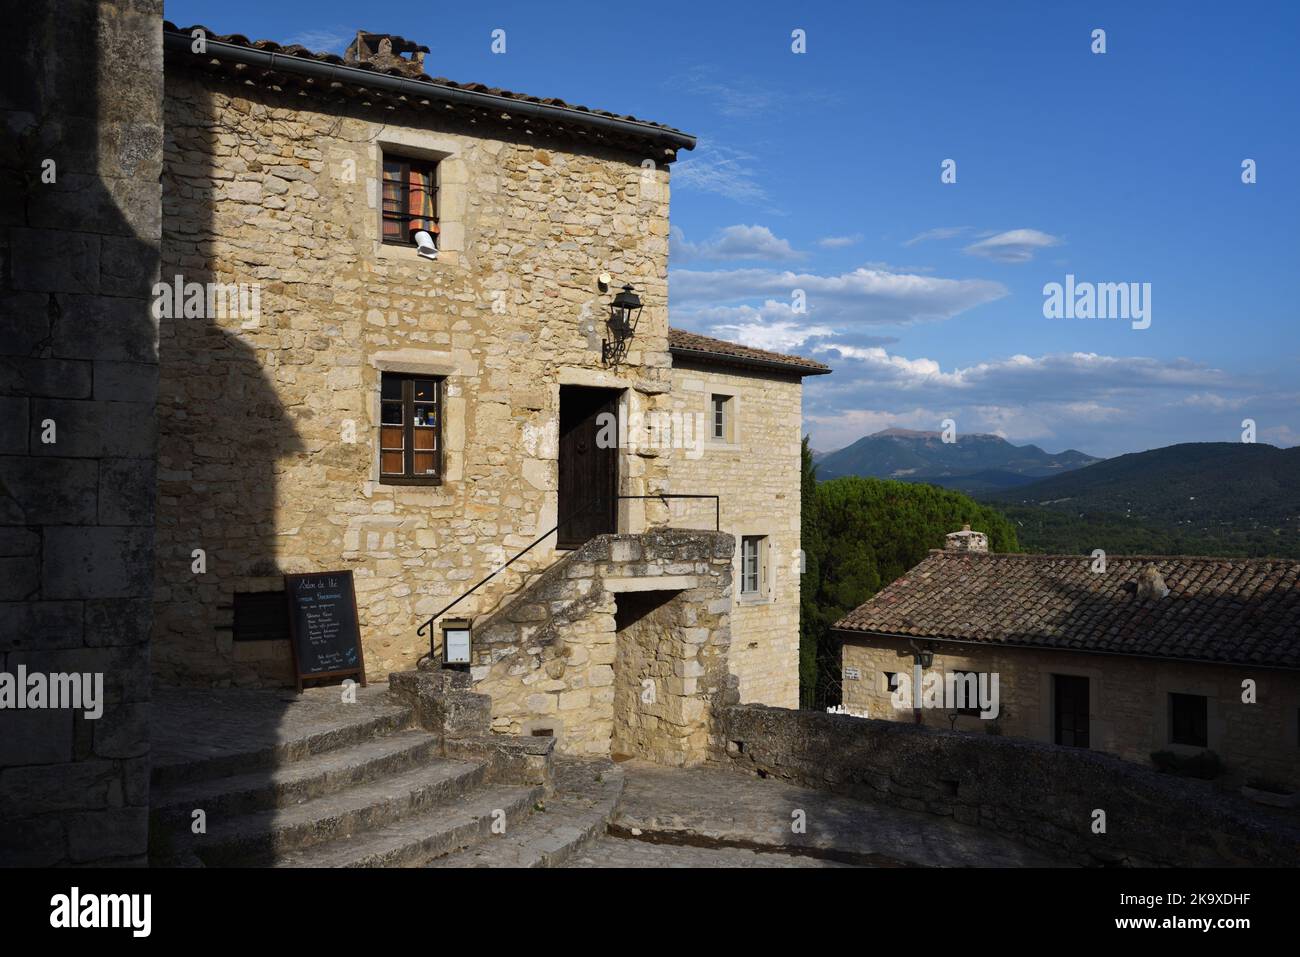 Historische Gebäude & Dorfplatz im alten Dorf Le Poët-Laval Drôme Provence Frankreich Stockfoto